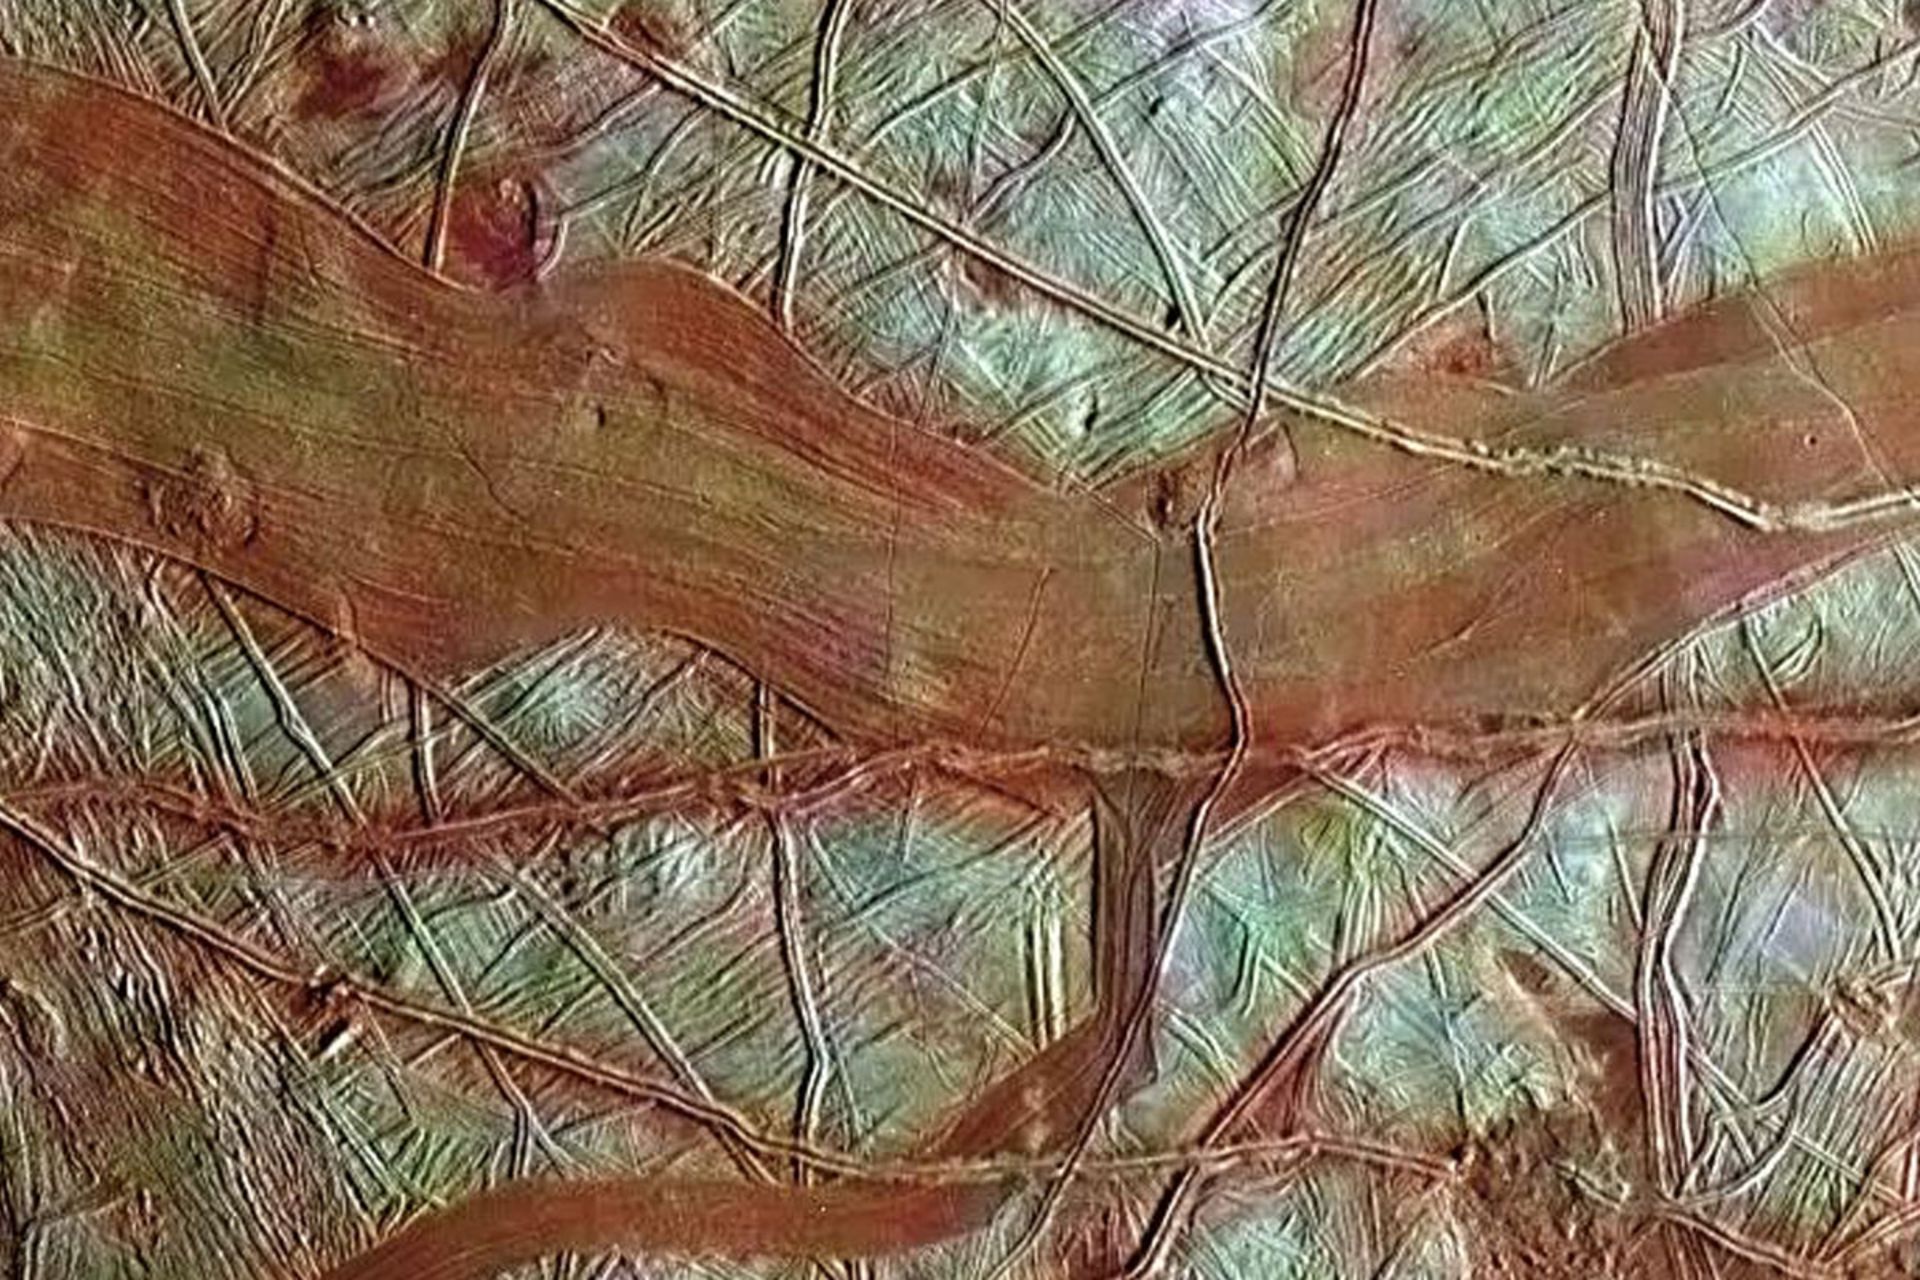 نوارهای قرمز رنگ بر سطح قمر اروپا که توسط فضاپیمای گالیله ثبت شدند